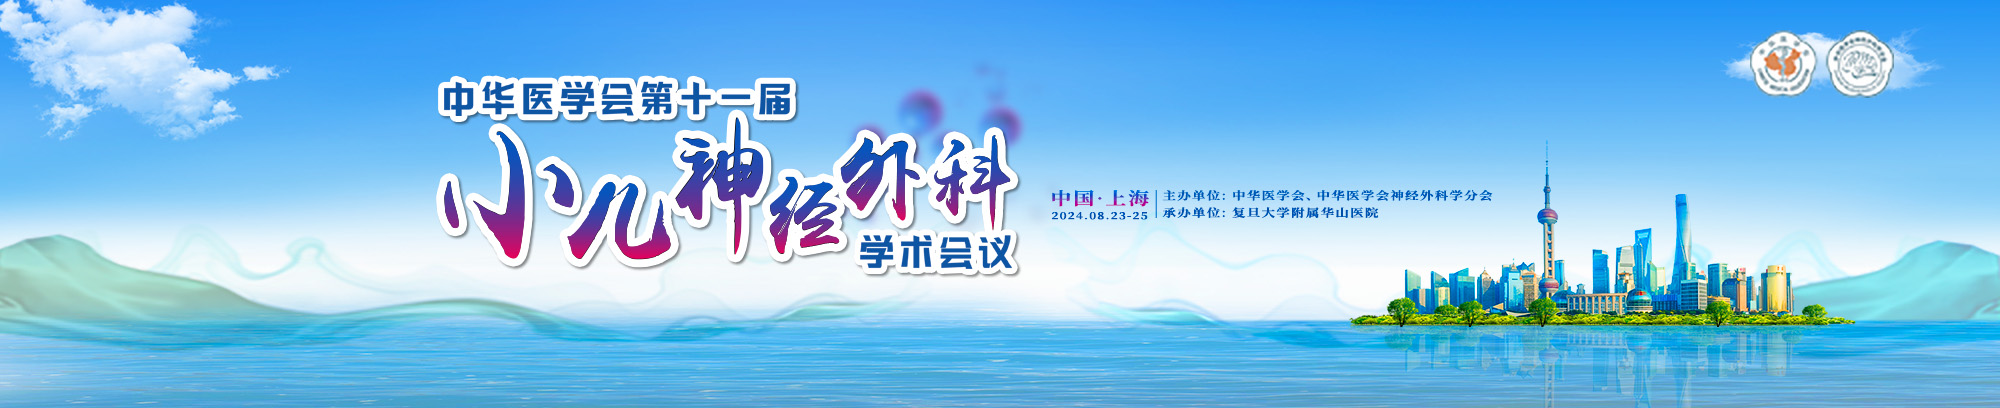 中华医学会第十一届小儿神经外科学术会议